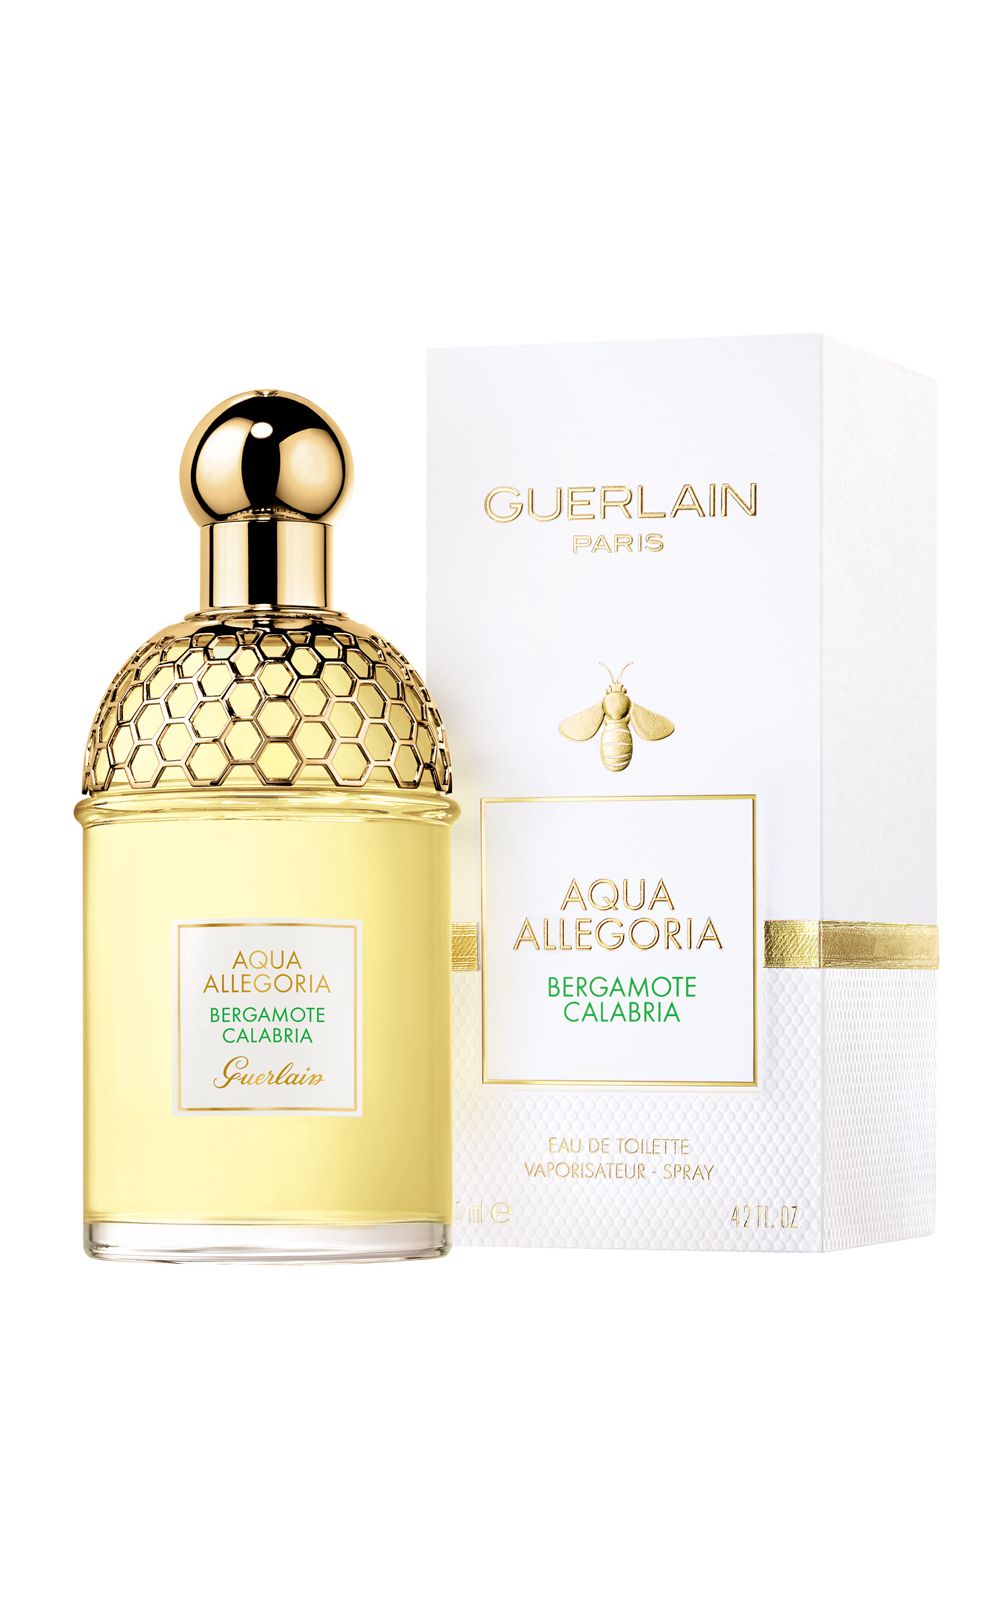 Foto 2 - Aqua Allegoria Bergamota Calabria Guerlain - Perfume Feminino Eau de Toilette - 75ml